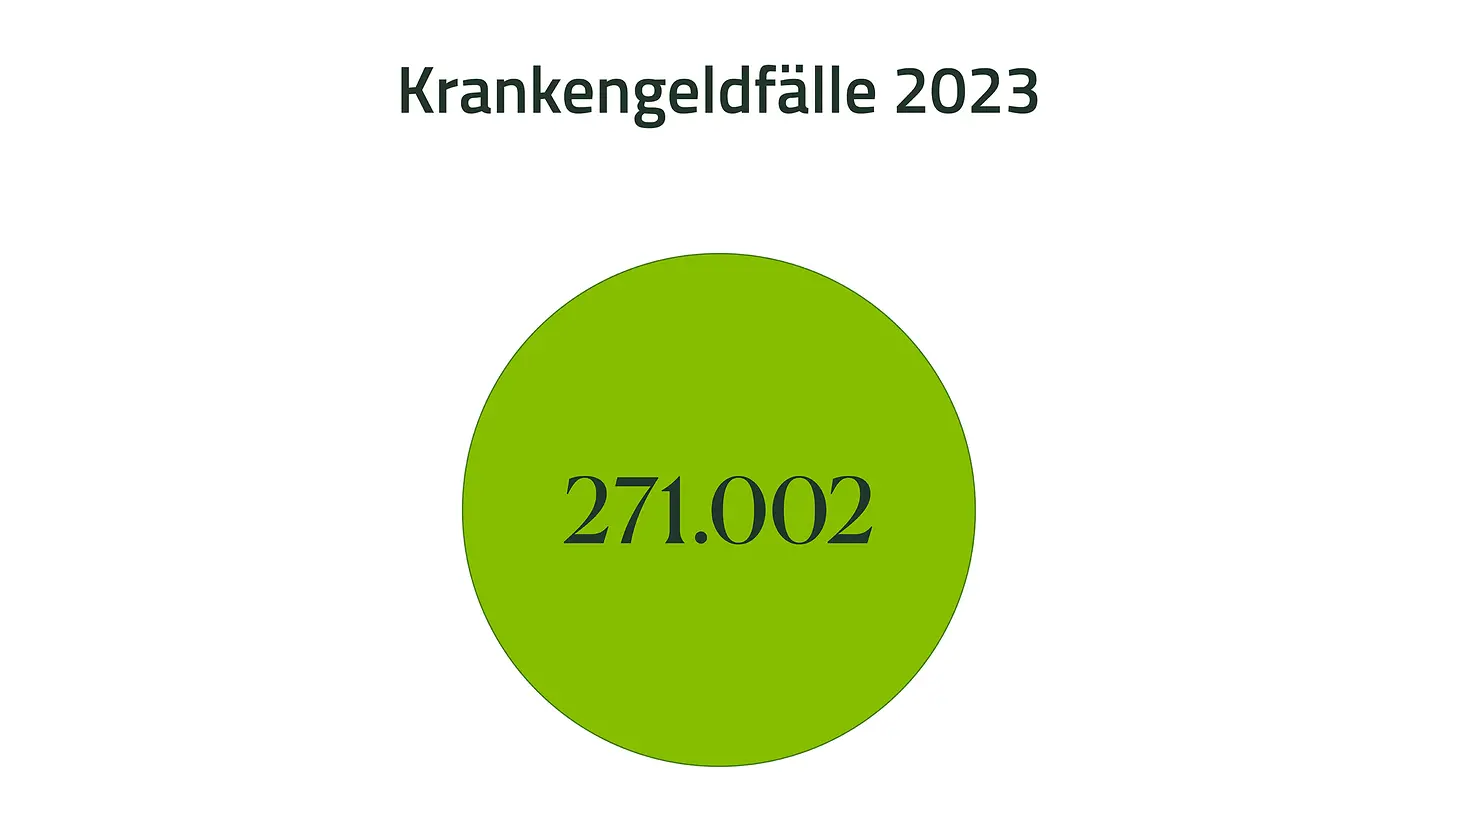 Grafik mit der Zahl 271.002 für Krankengeldfälle 2023